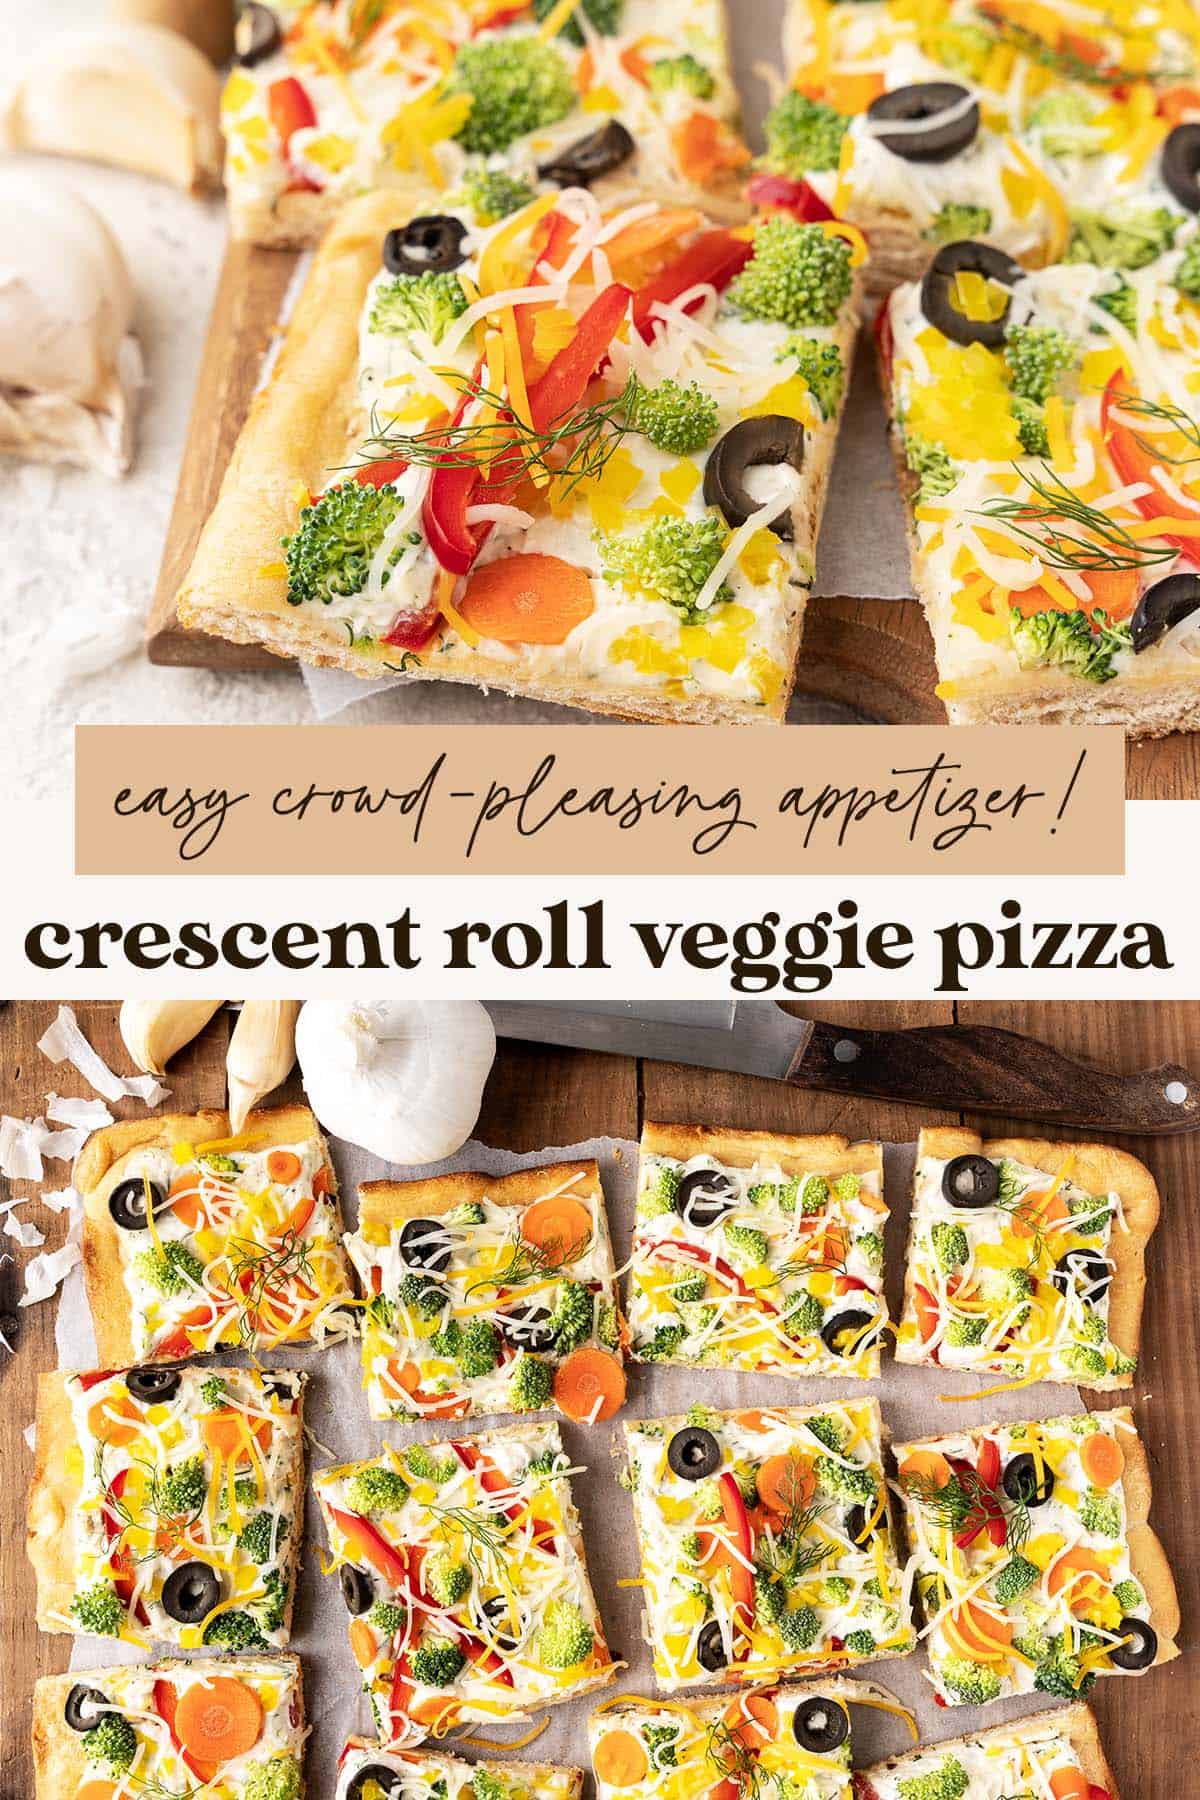 crescent roll veggie pizza recipe pin